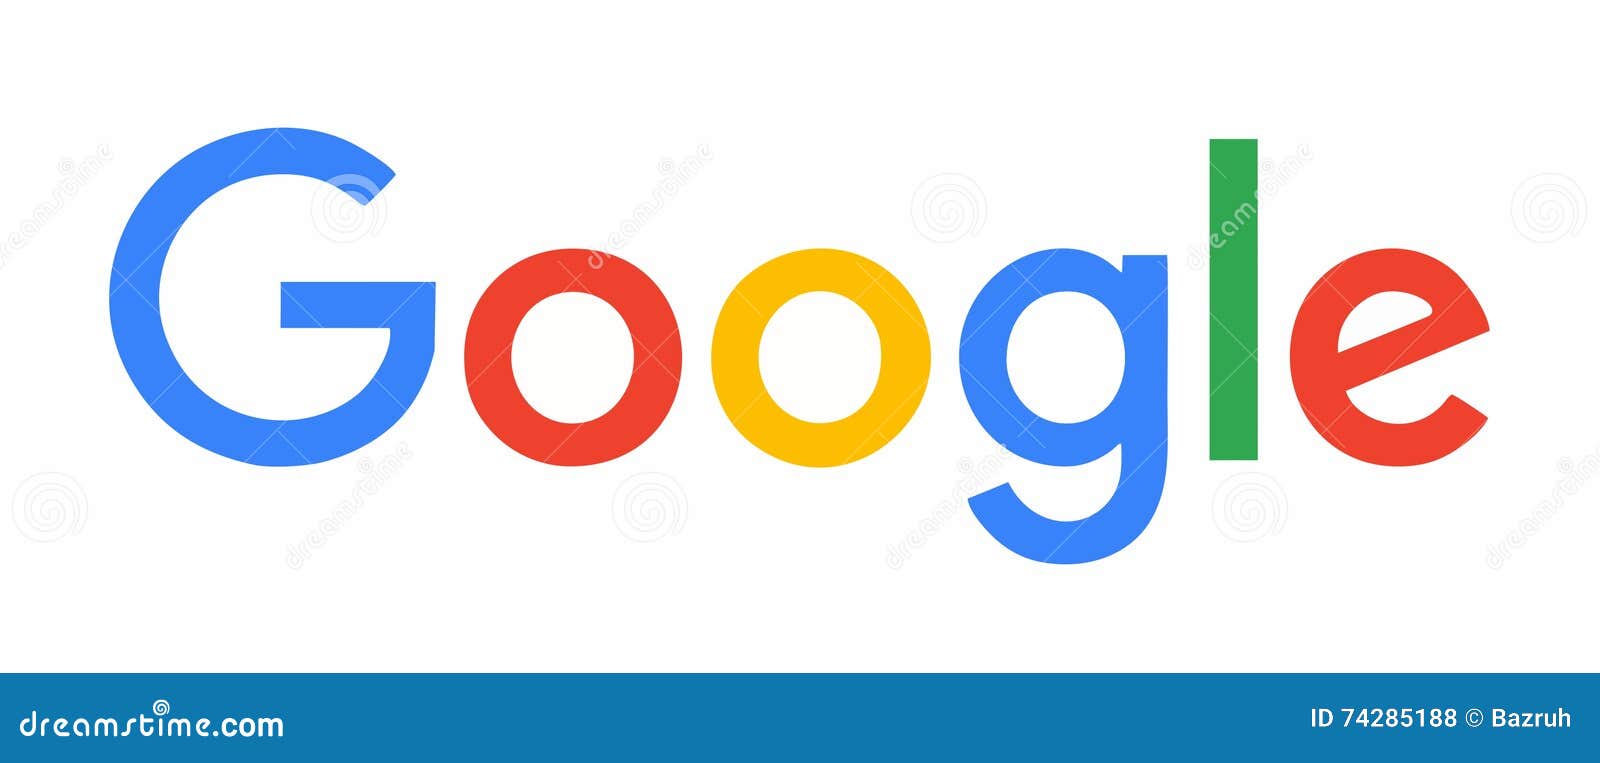 Chụp những bức hình độc đáo và hiện đại với logo Google trong các tác phẩm nghệ thuật của bạn. Hình ảnh logo Google chụp hiệu ứng sẽ giúp trình bày công việc của bạn một cách đẹp mắt và thu hút sự chú ý của mọi người.